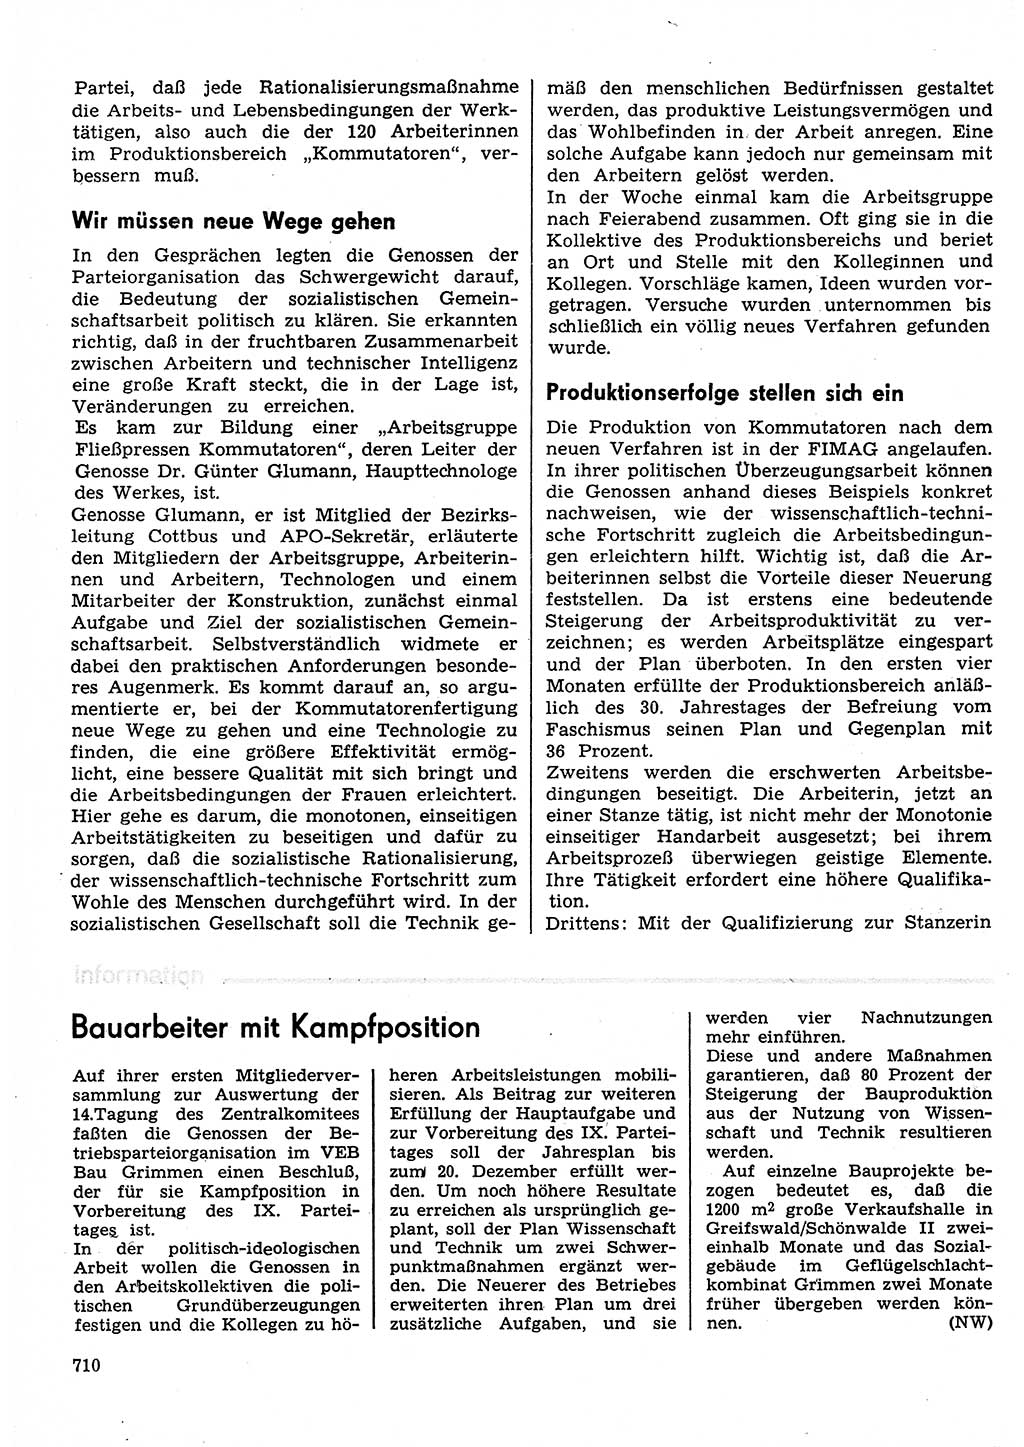 Neuer Weg (NW), Organ des Zentralkomitees (ZK) der SED (Sozialistische Einheitspartei Deutschlands) für Fragen des Parteilebens, 30. Jahrgang [Deutsche Demokratische Republik (DDR)] 1975, Seite 710 (NW ZK SED DDR 1975, S. 710)